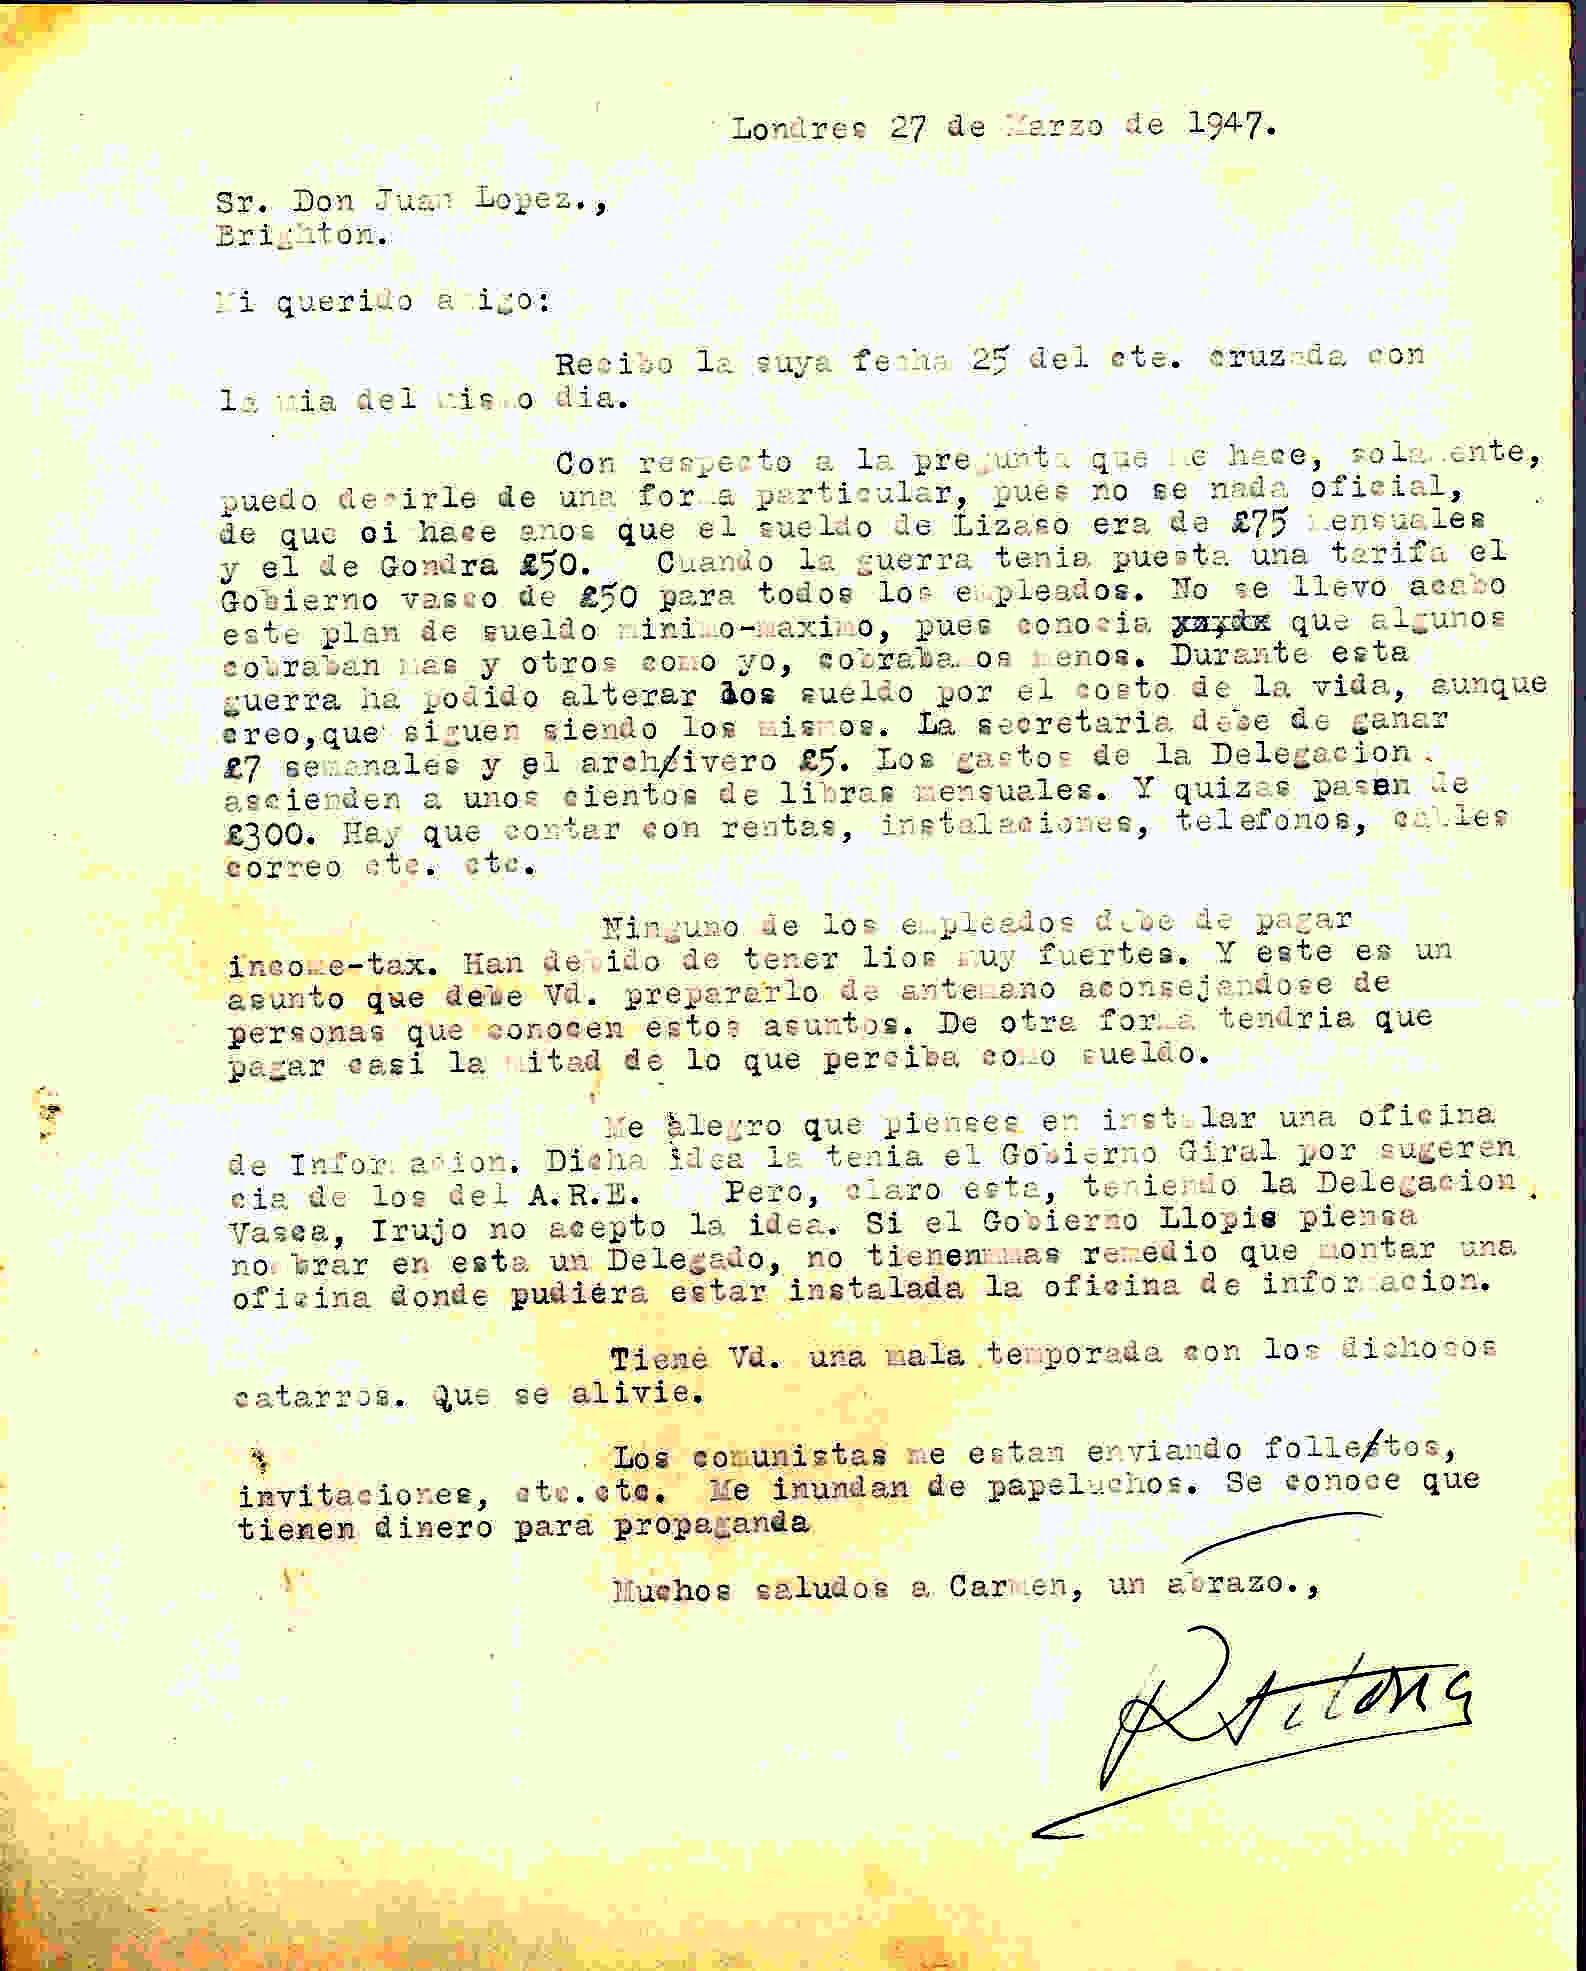 Carta de Roque Victoria en la informa de los sueldos del personal de la delegación del gobierno vasco de una forma particular, pues no es oficial.